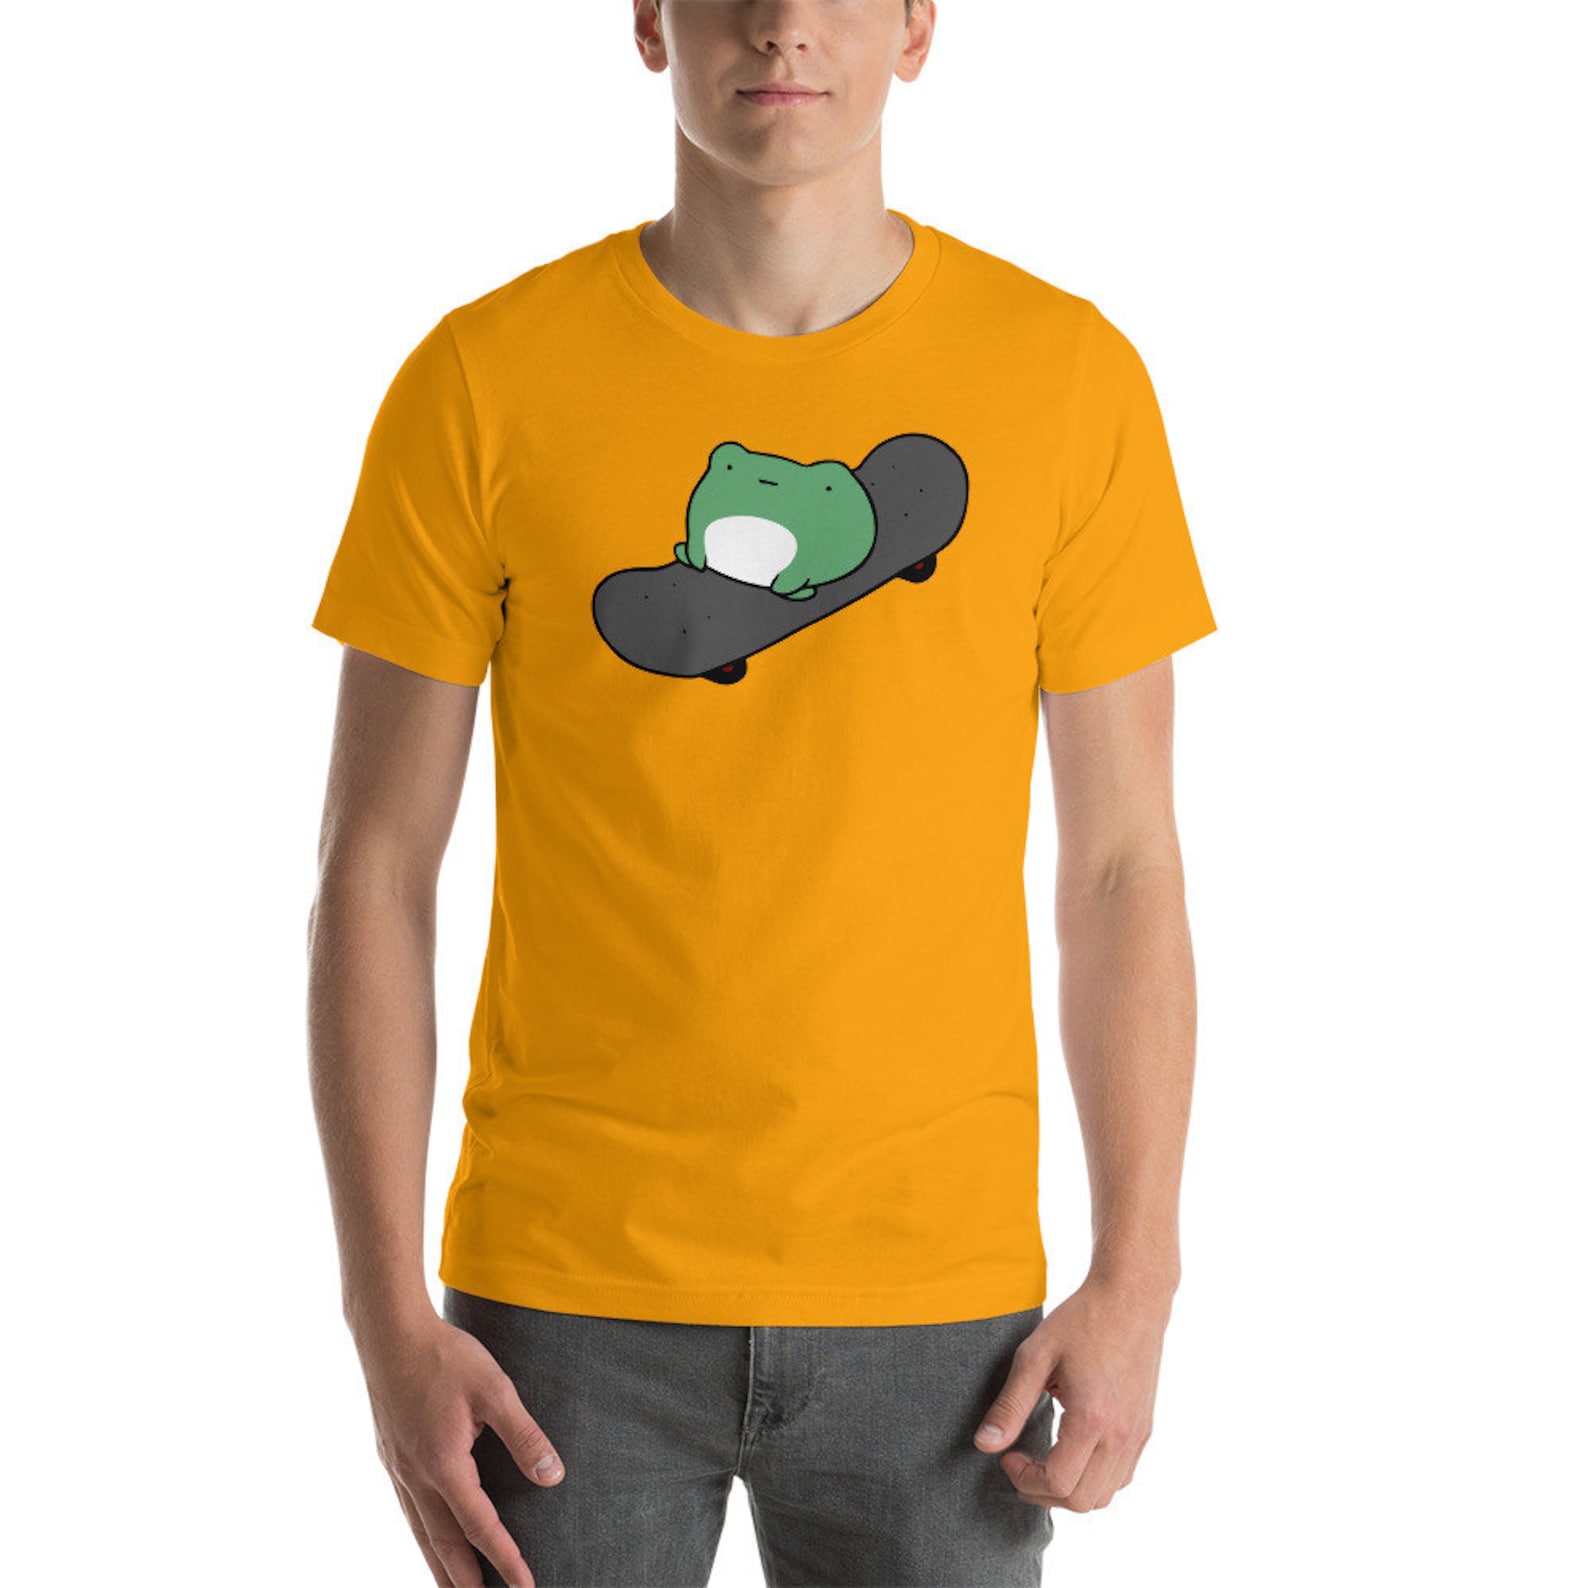 Frog on Skateboard T-Shirt For Skateboarders Skateboarding | Etsy